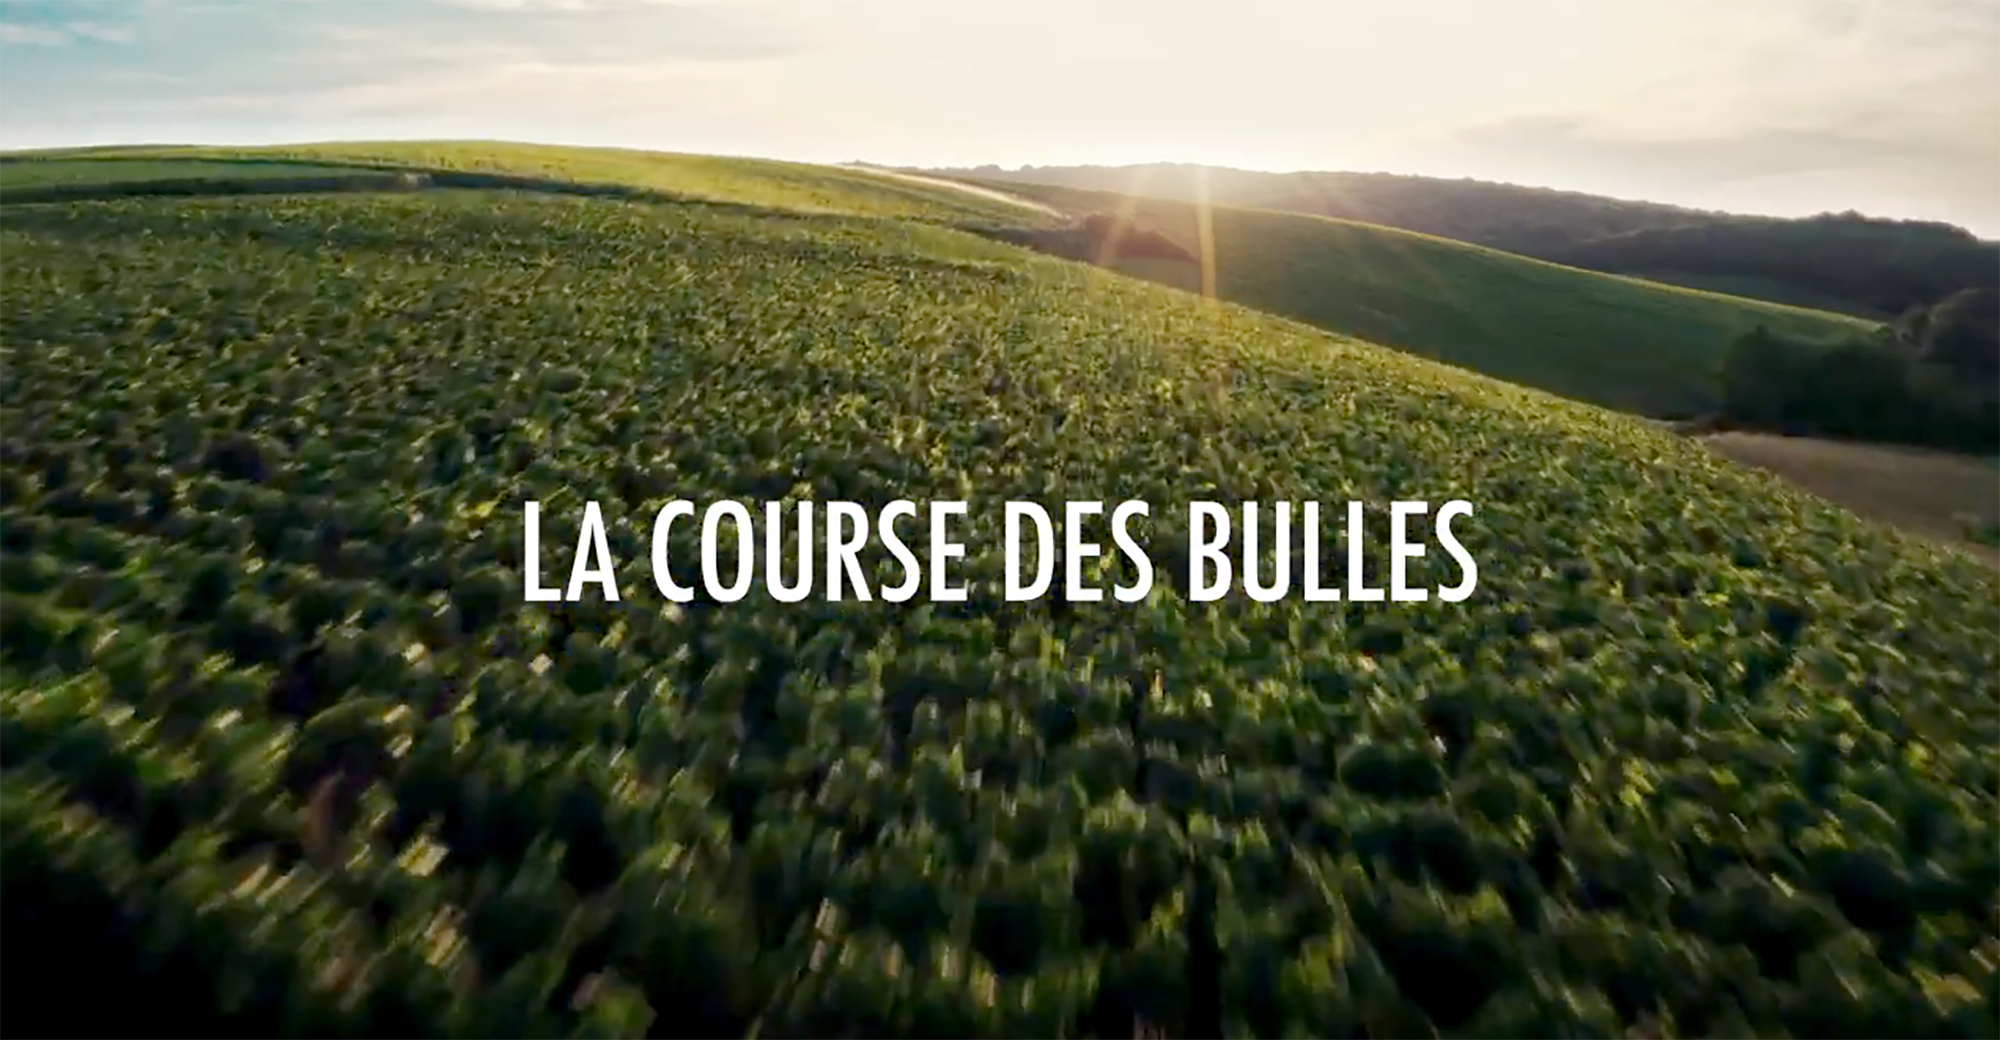 « La course des bulles » : la poétique musicale du métier de vigneron s’illustre en vidéo